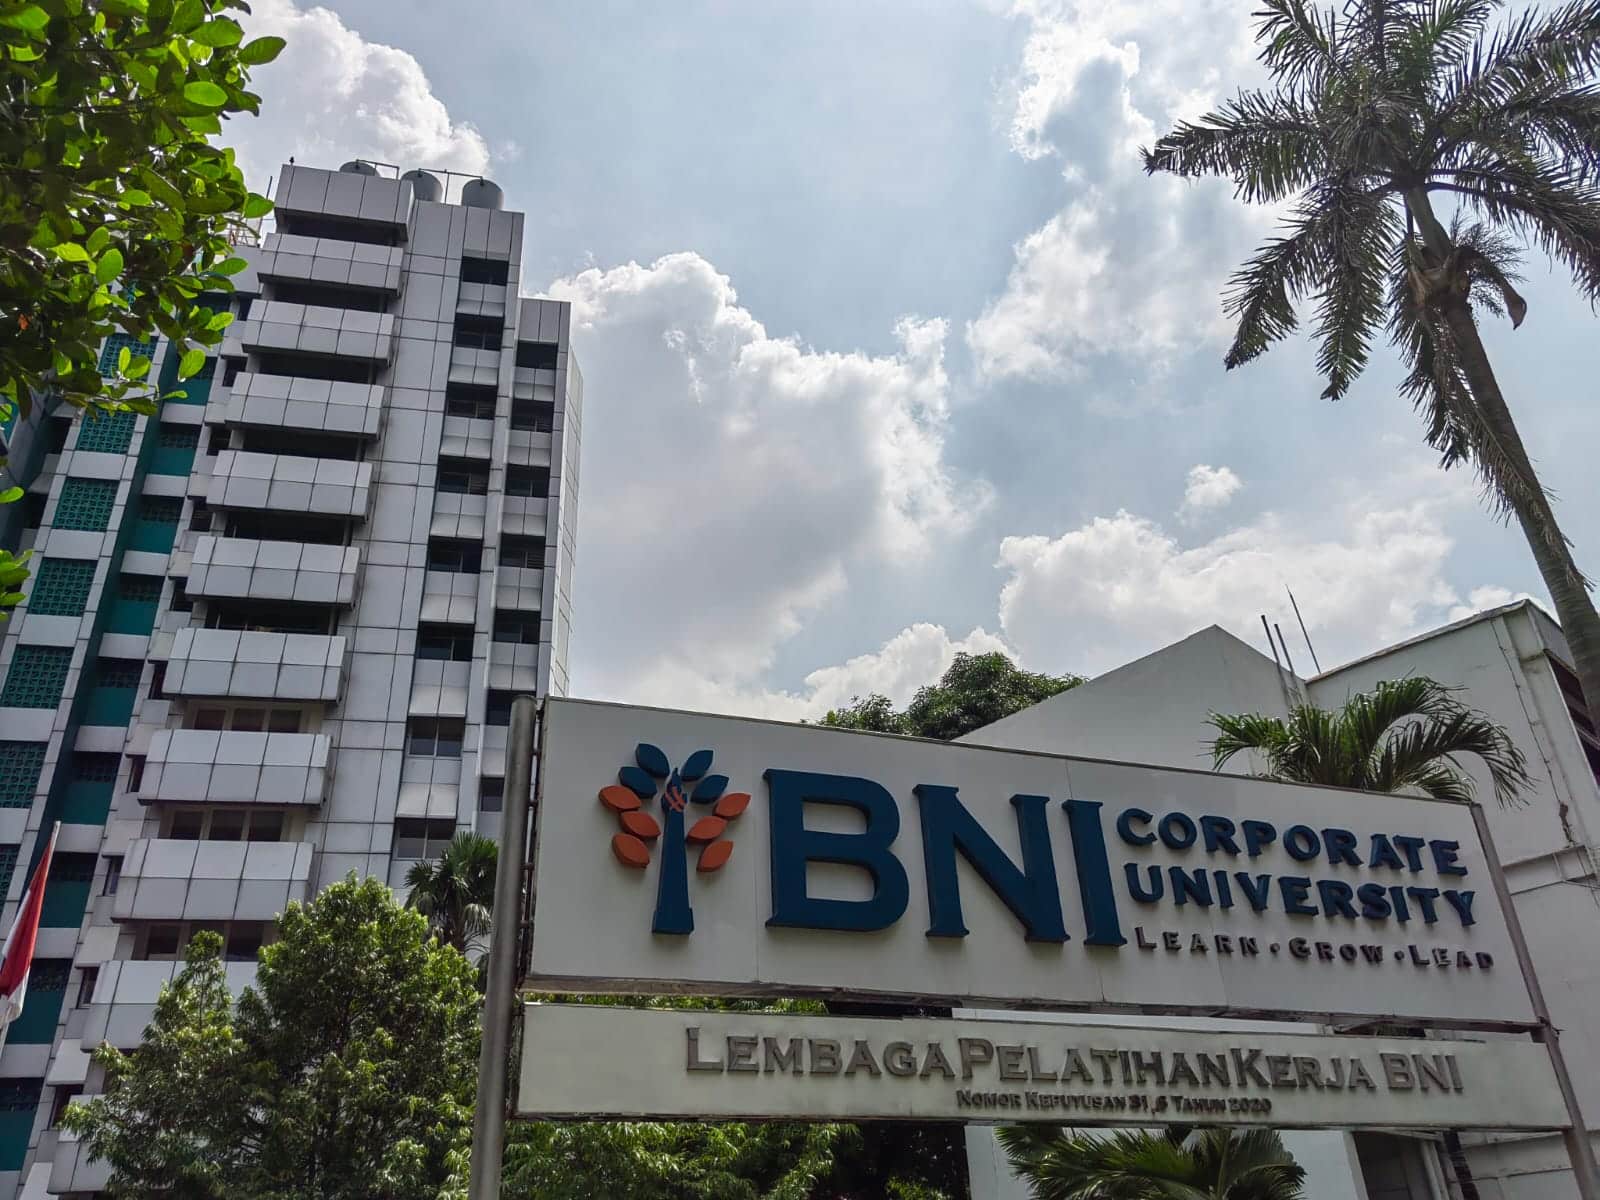 BNI Corporate University Slipi